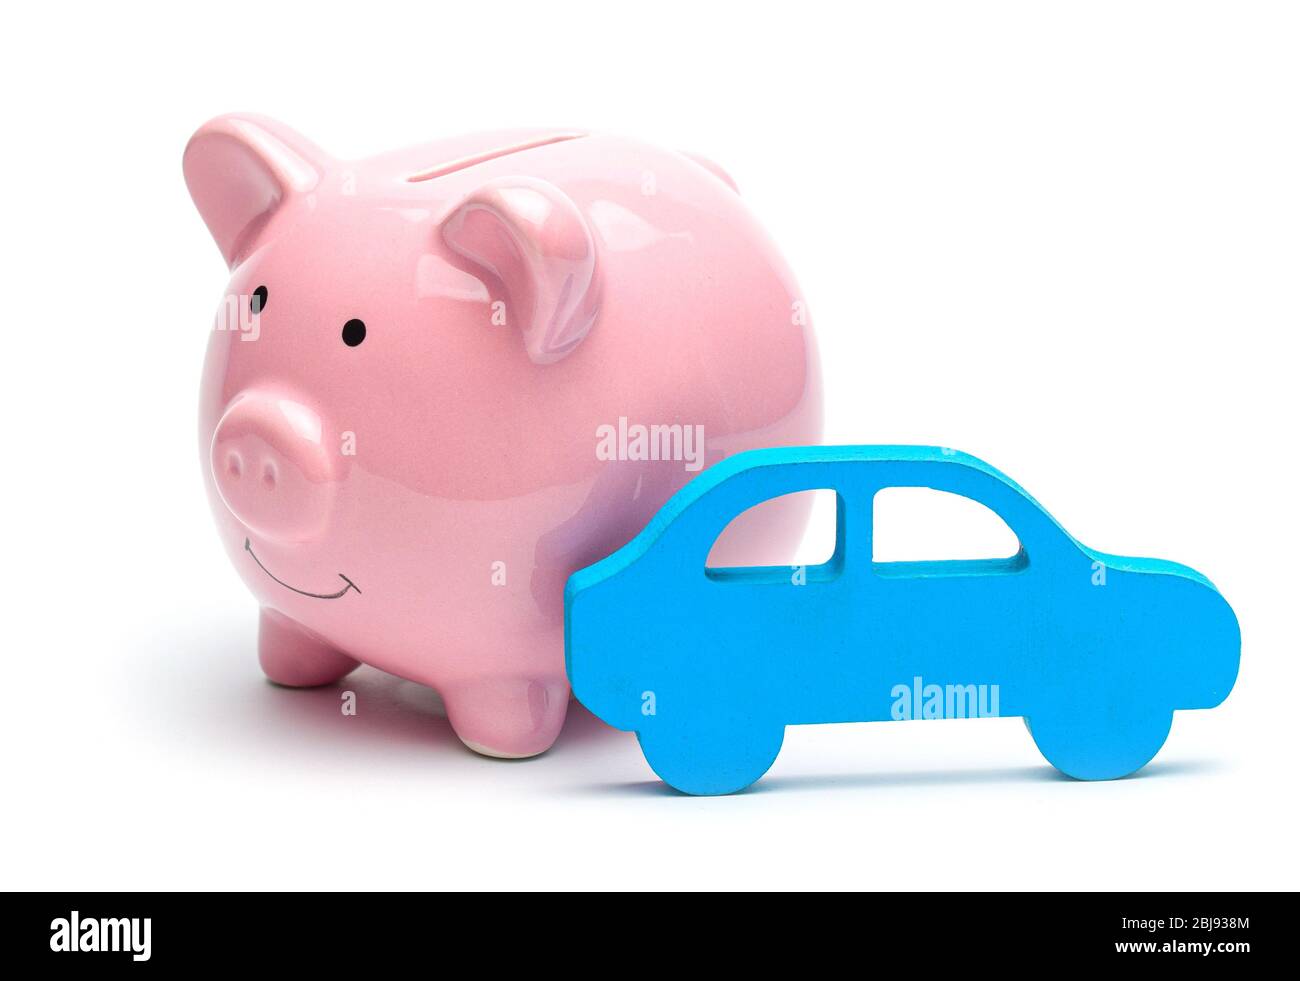 Rosa salvadanaio e auto blu isolato su sfondo bianco. Concetto di risparmiare sull'acquisto di un auto o in auto sulla carta di credito. Foto Stock